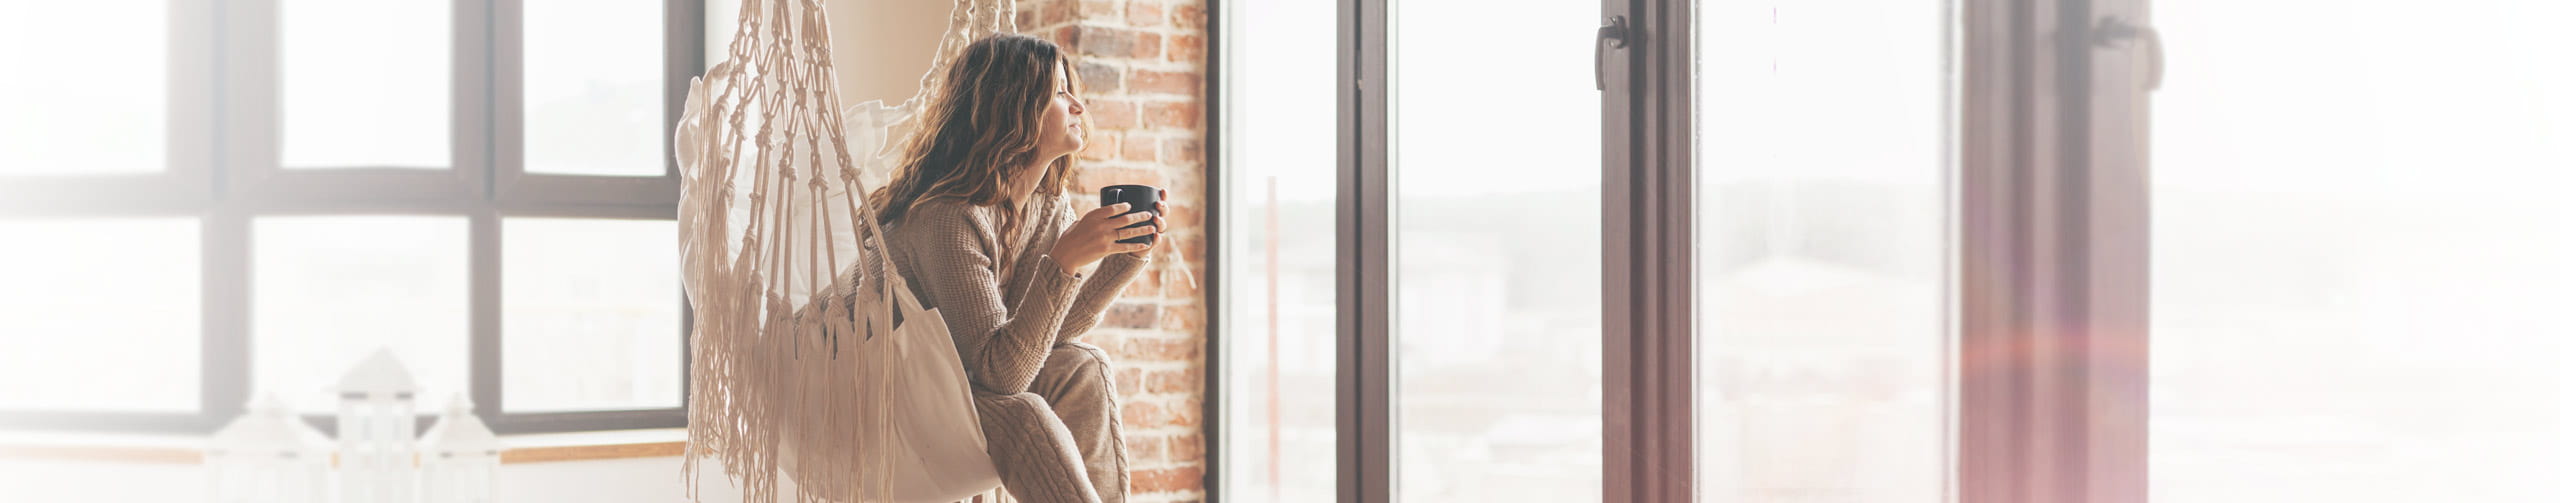 Frau steht mit Kaffeetasse nachdenklich vorm Fenster